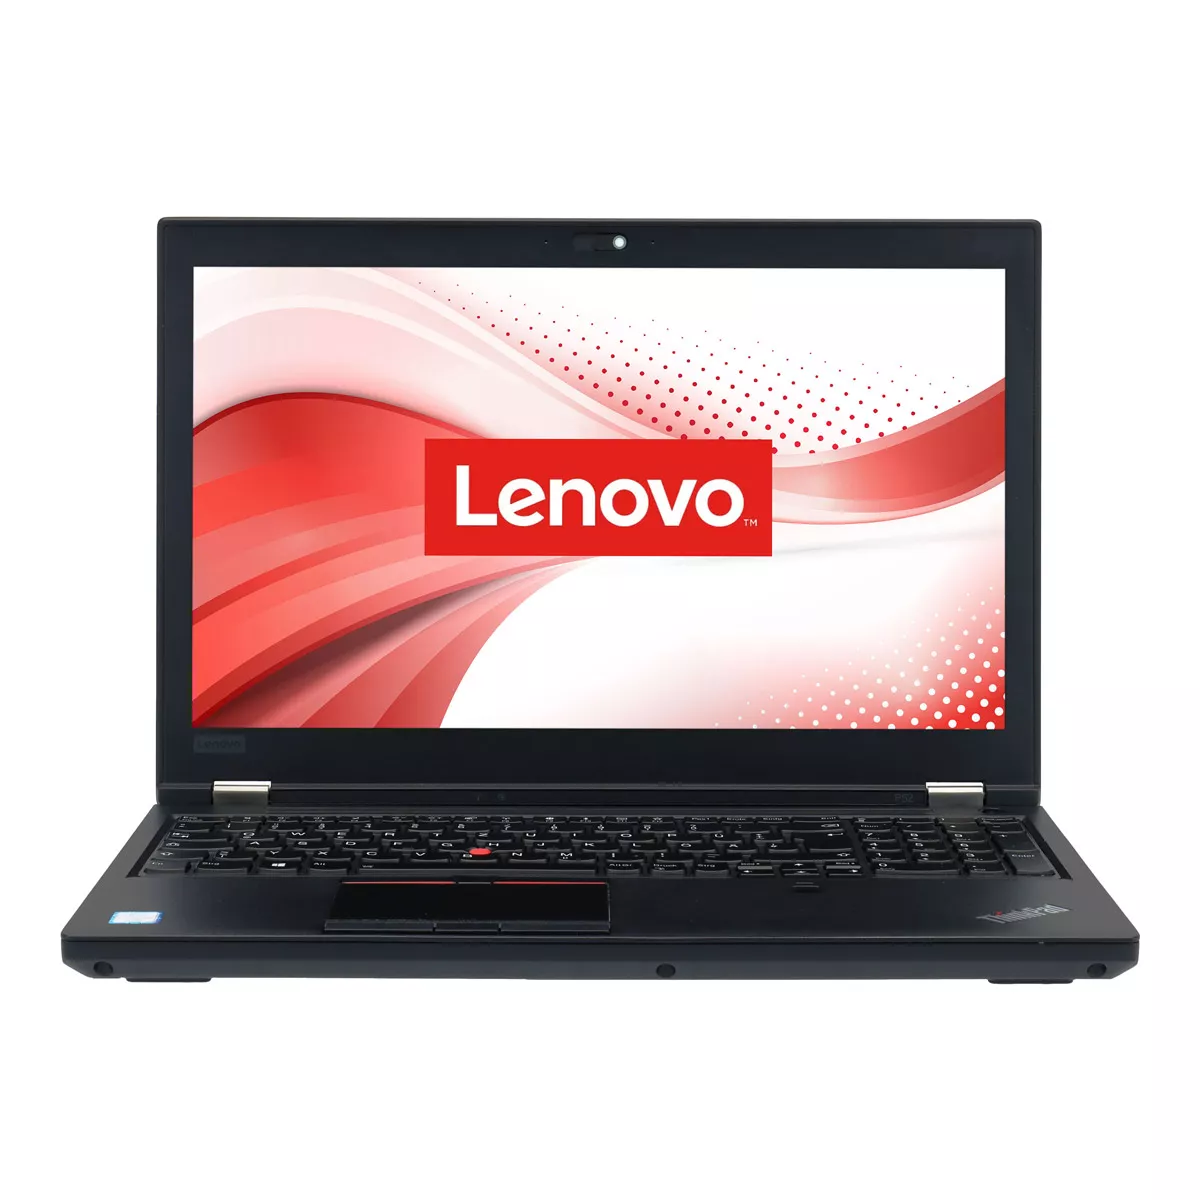 Lenovo ThinkPad P52 Core i7 8750H nVidia Quadro P1000M 16 GB 1 TB M.2 SSD Webcam B